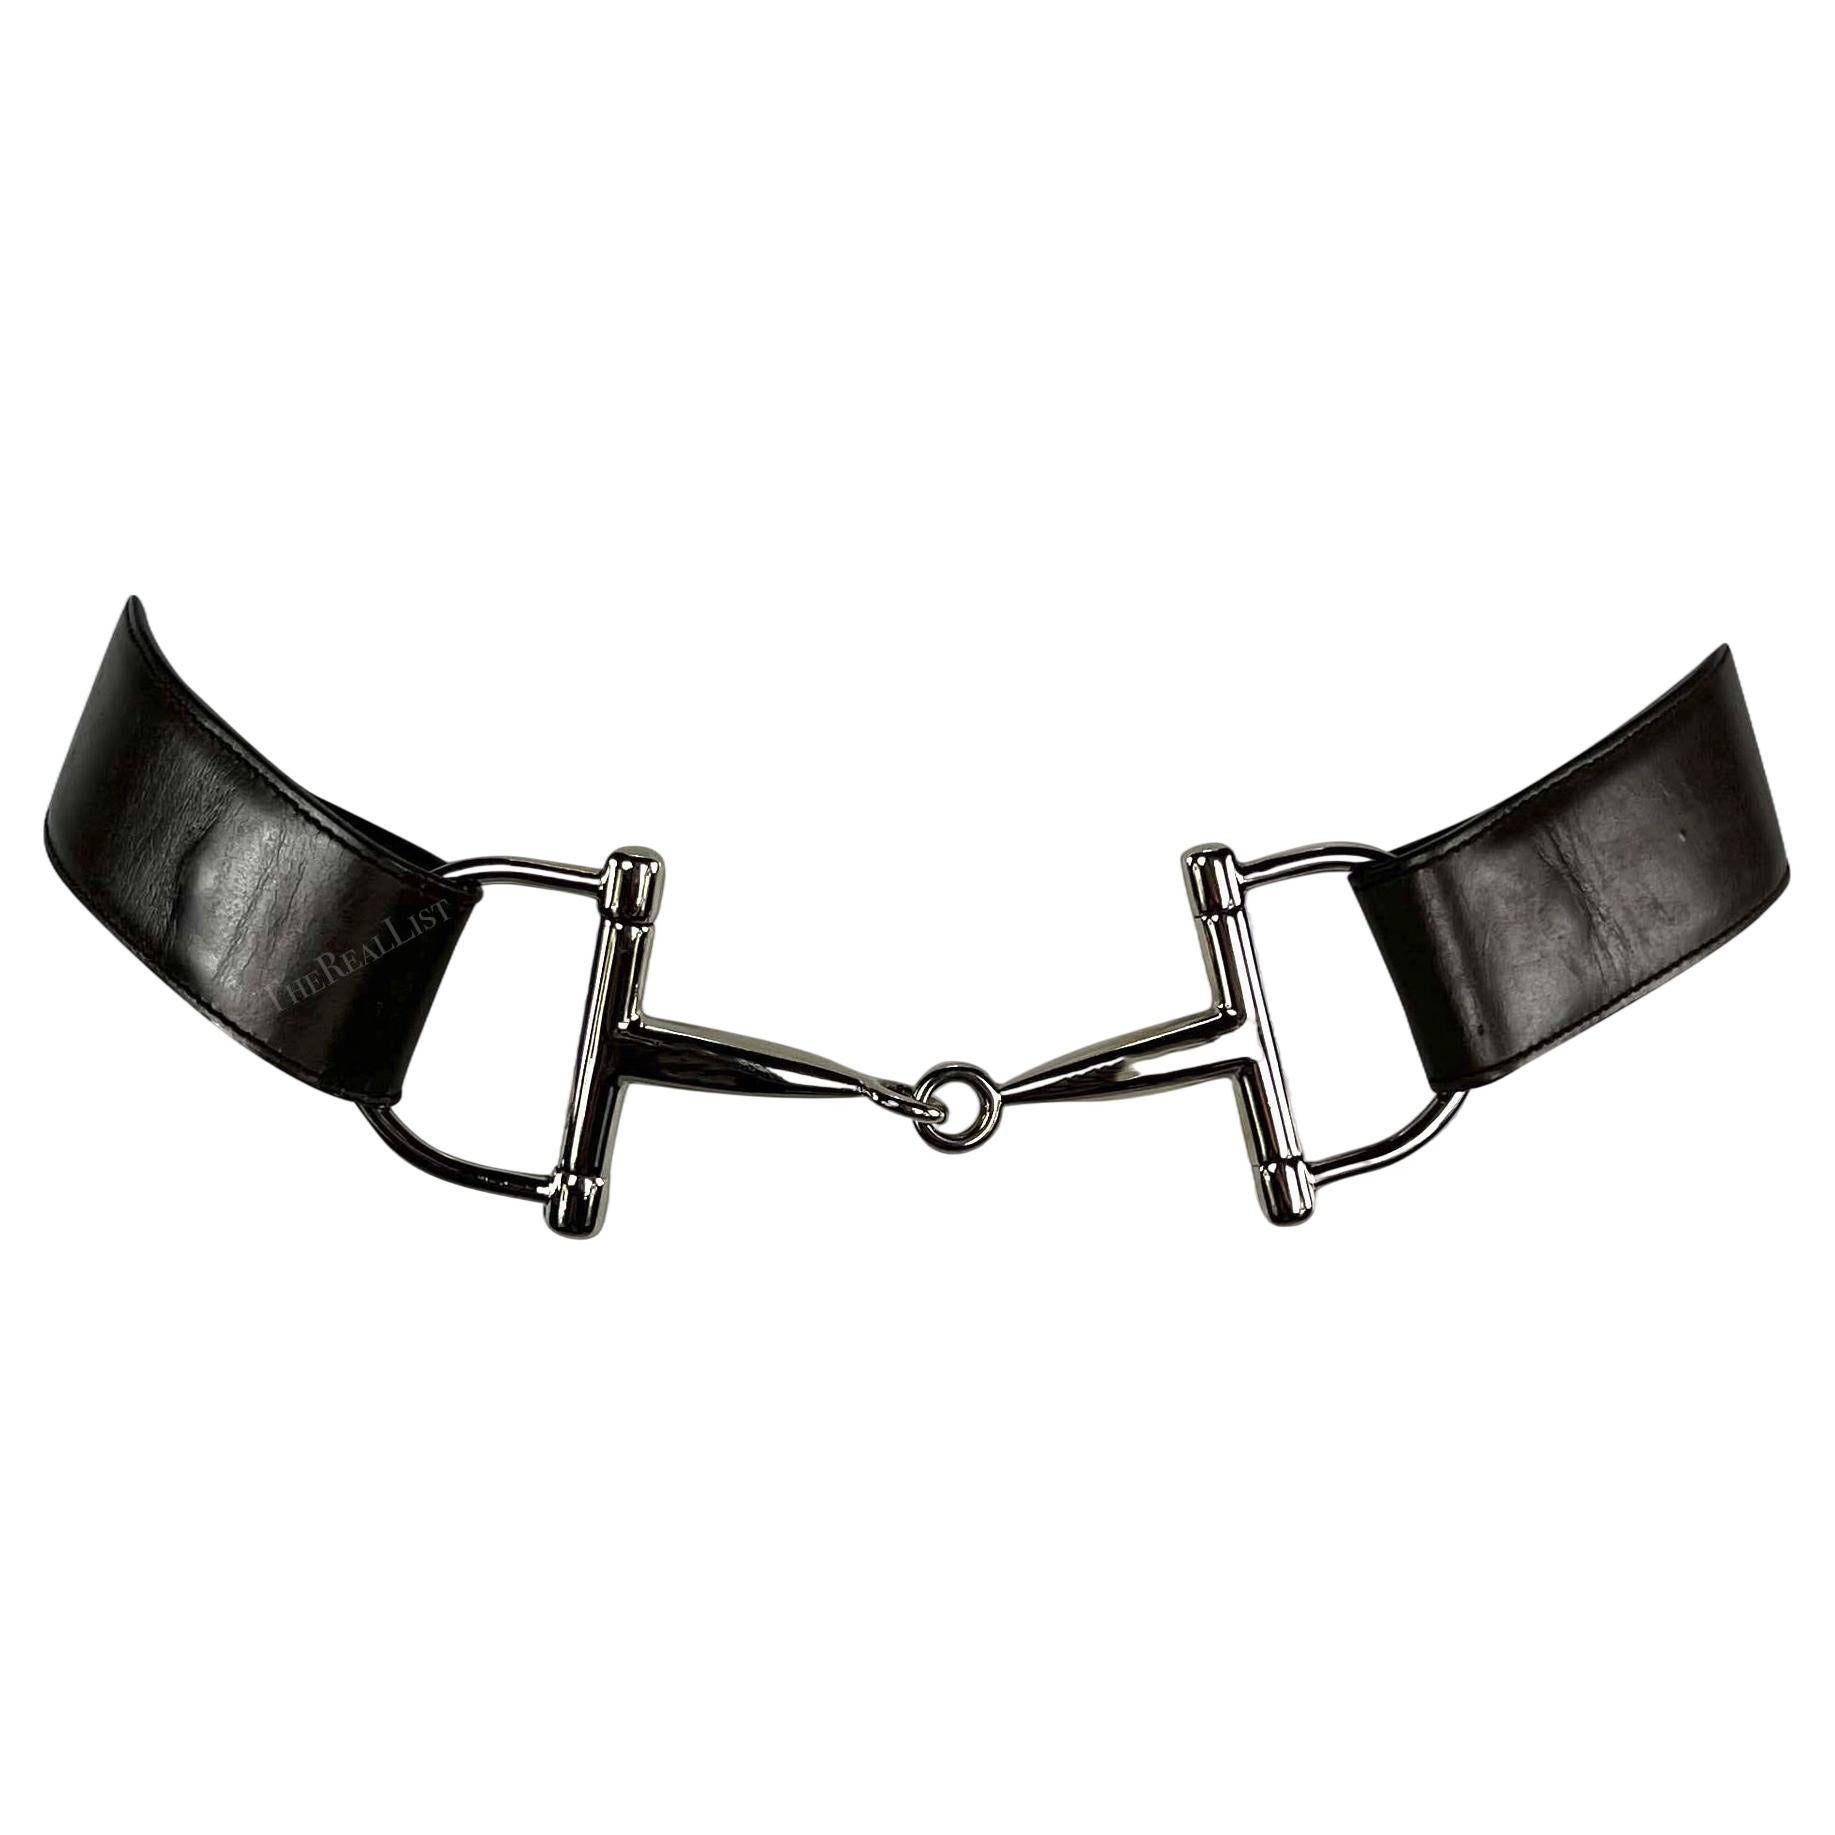 How should a Gucci belt fit?